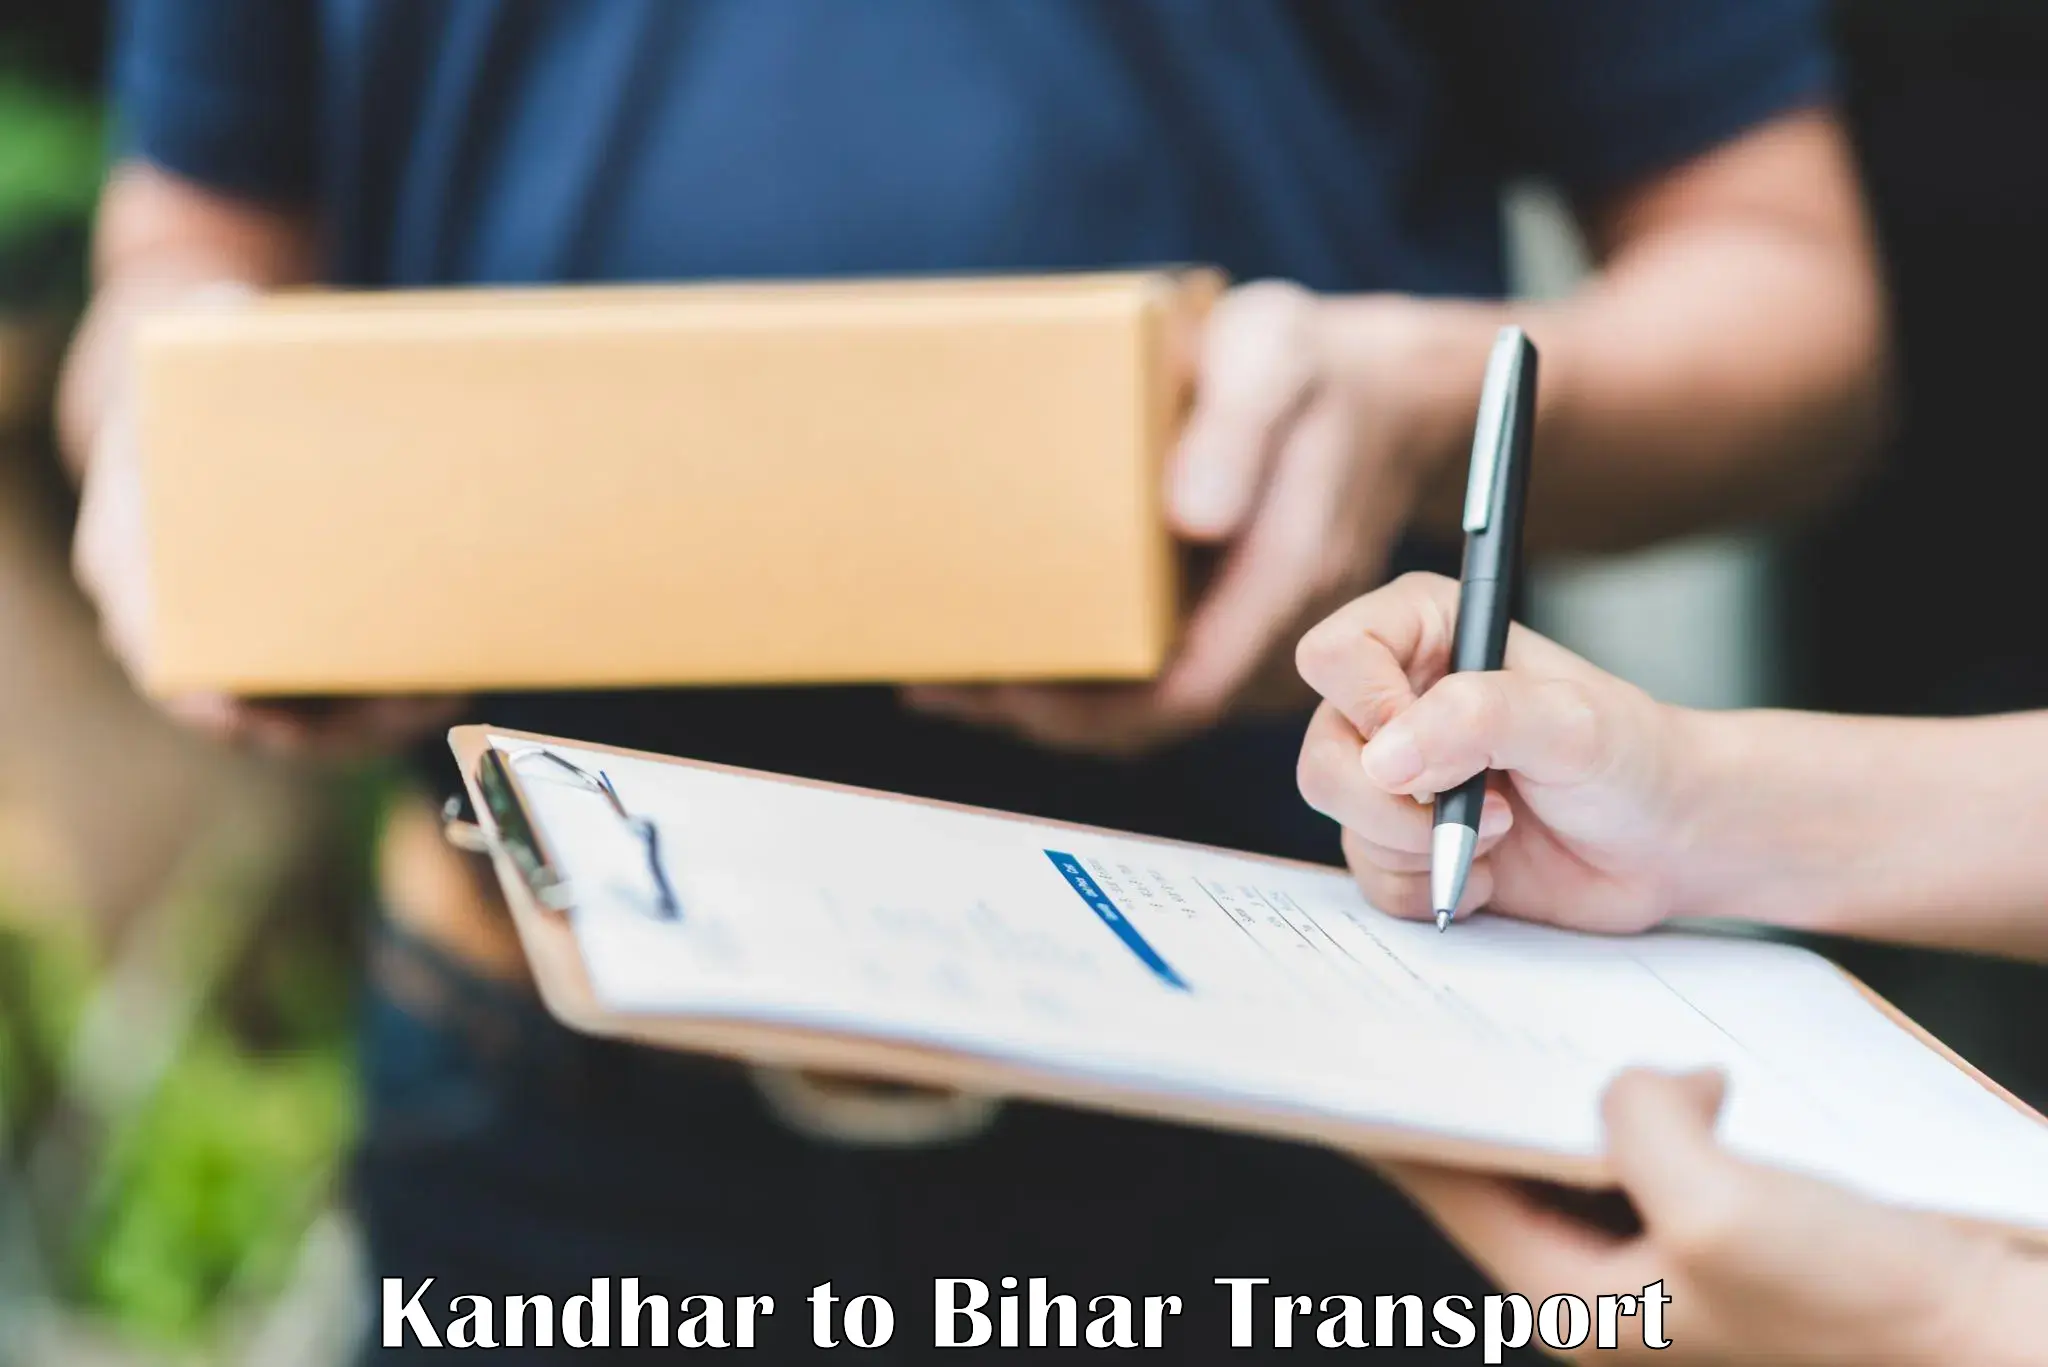 Express transport services Kandhar to Siwan